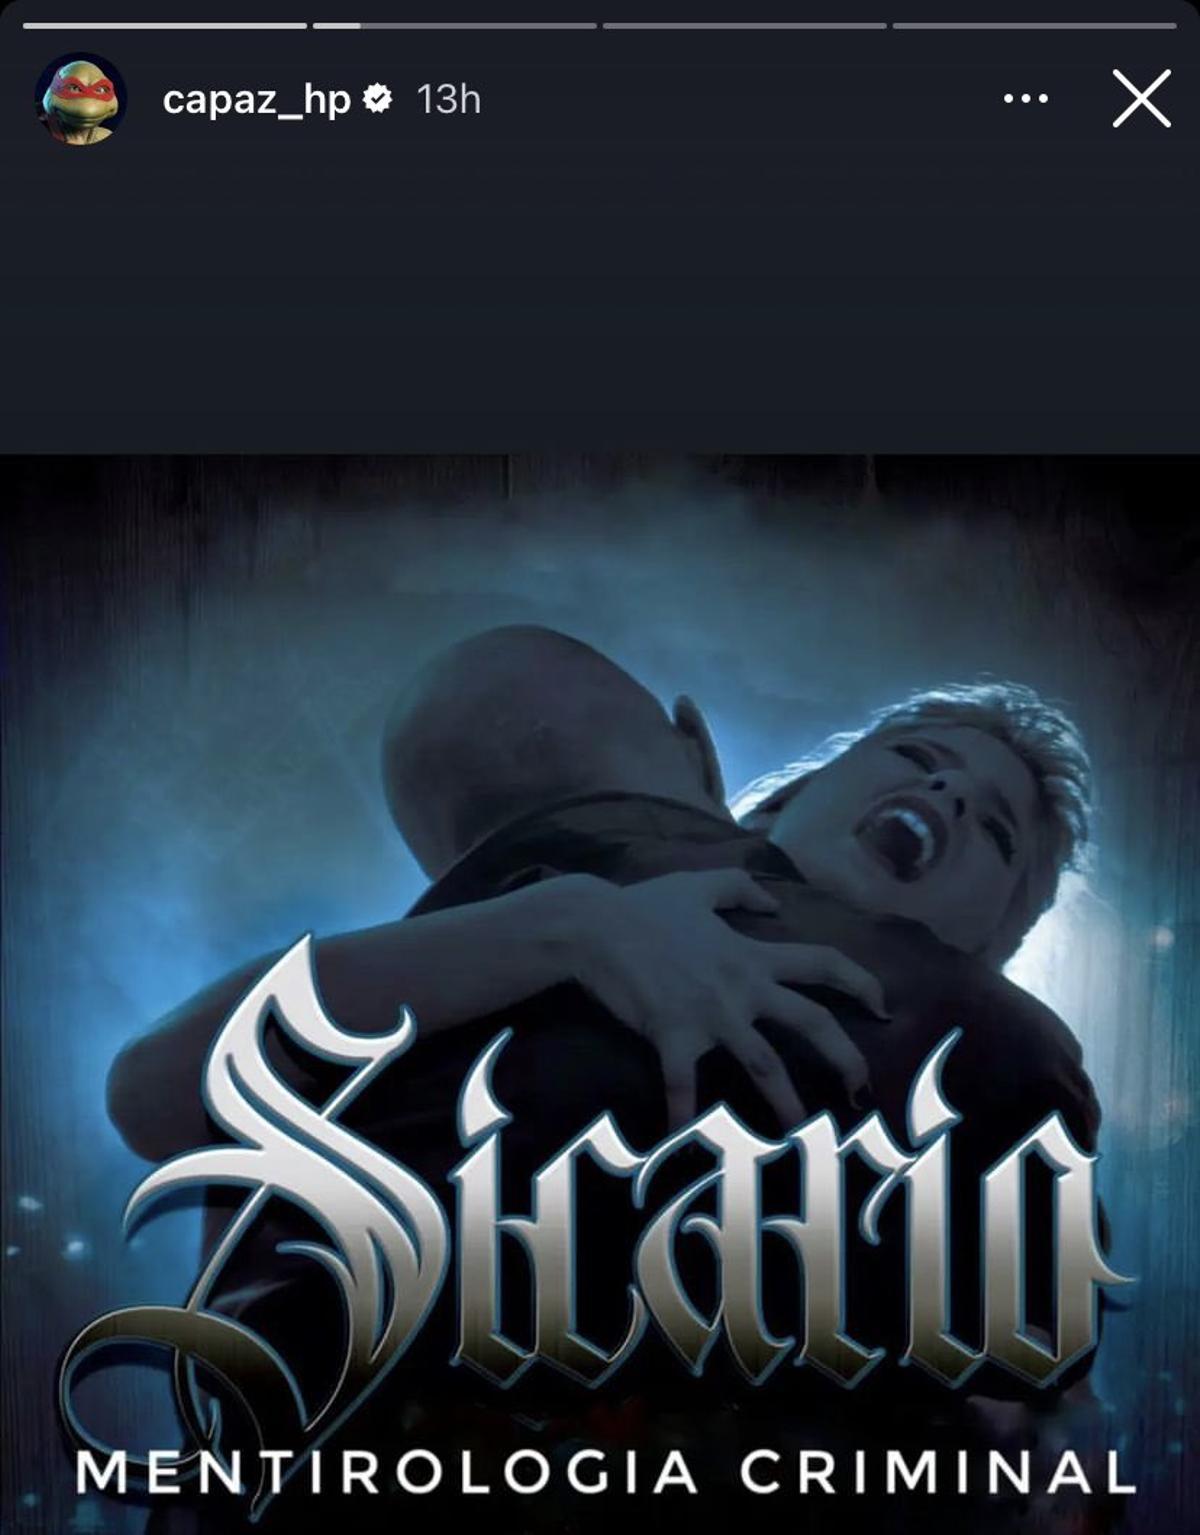 La portada del disco de Sicario 'Mitología criminal' rebautizada por Capaz 'Mentirología criminal'